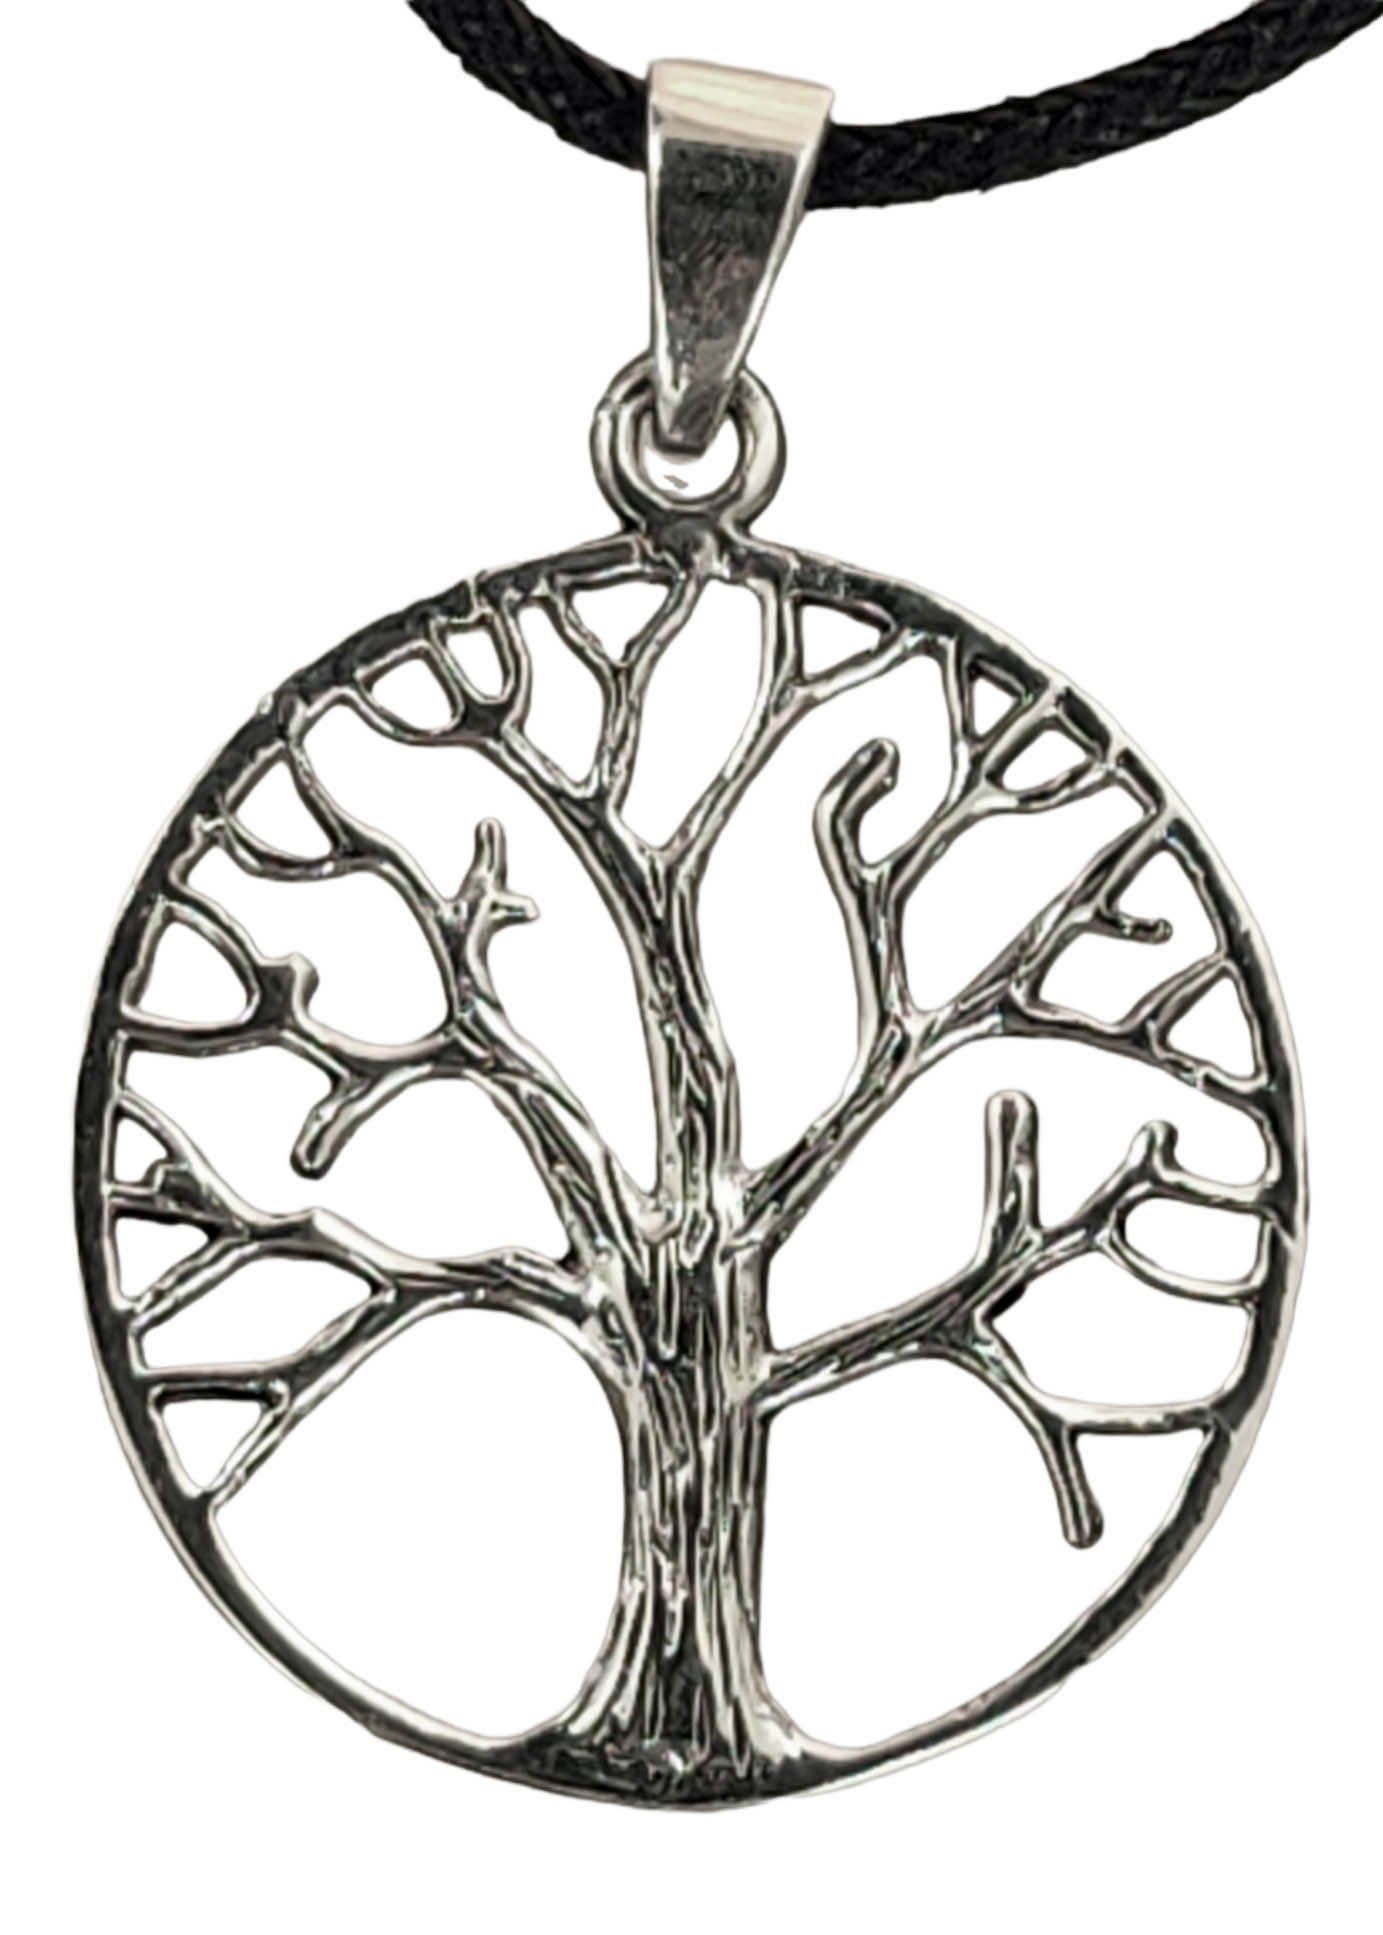 Kiss of Leather Kettenanhänger Lebensbaum 925 Silber Anhänger Yggdrasil  Baum des Lebens, Maße: ca. 27 mm Durchmesser Innenmaße der Öse: ca. 6 mm  hoch x ca. 4 mm breit